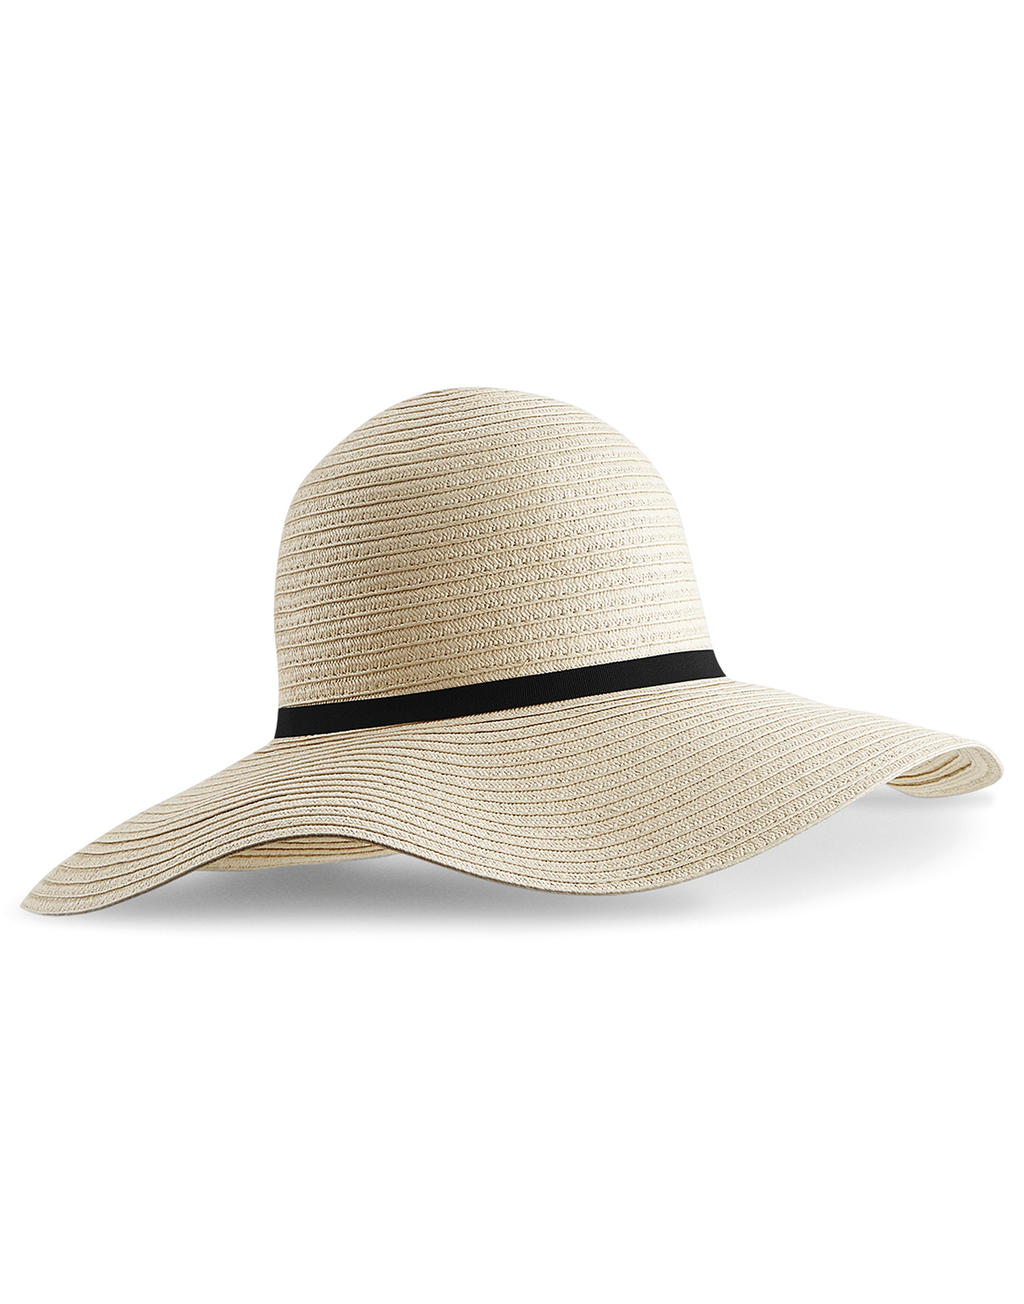  Marbella Wide-Brimmed Sun Hat in Farbe Natural